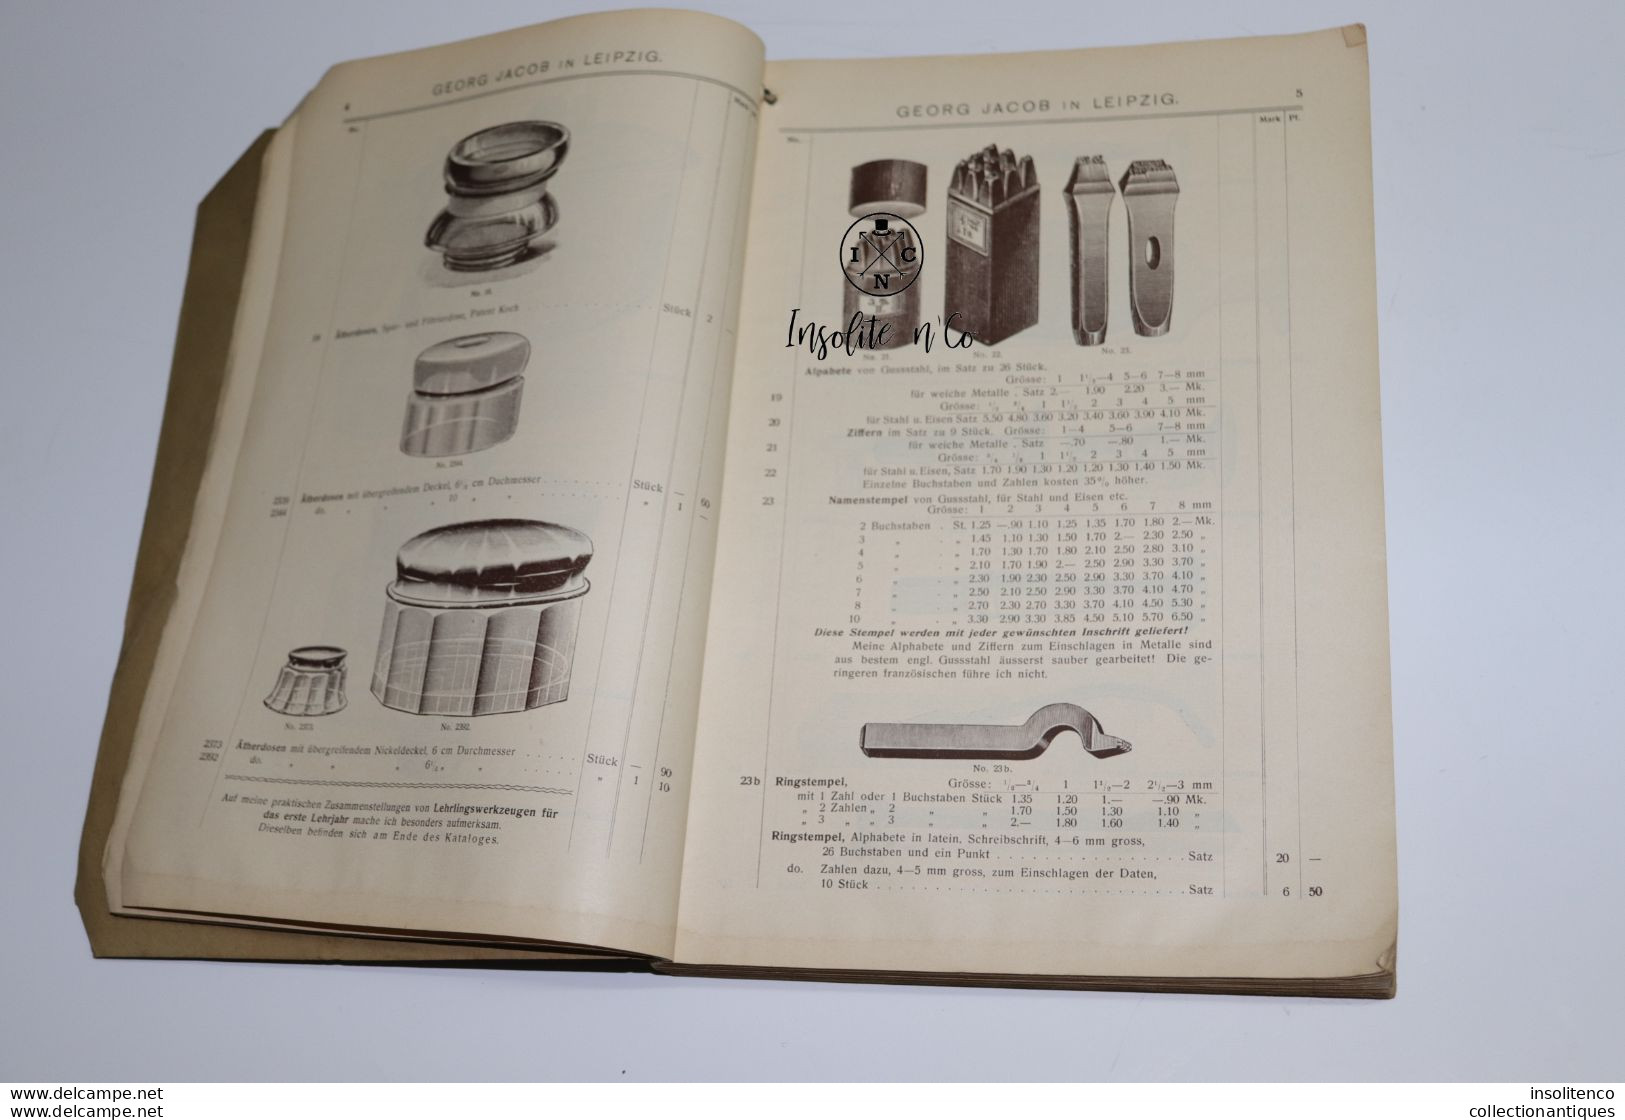 Horlogerie - Catalogue De Prix Pour Les Pièces Georg Jacob - 1904 - 592 Pages - Leipzig - Catalogi